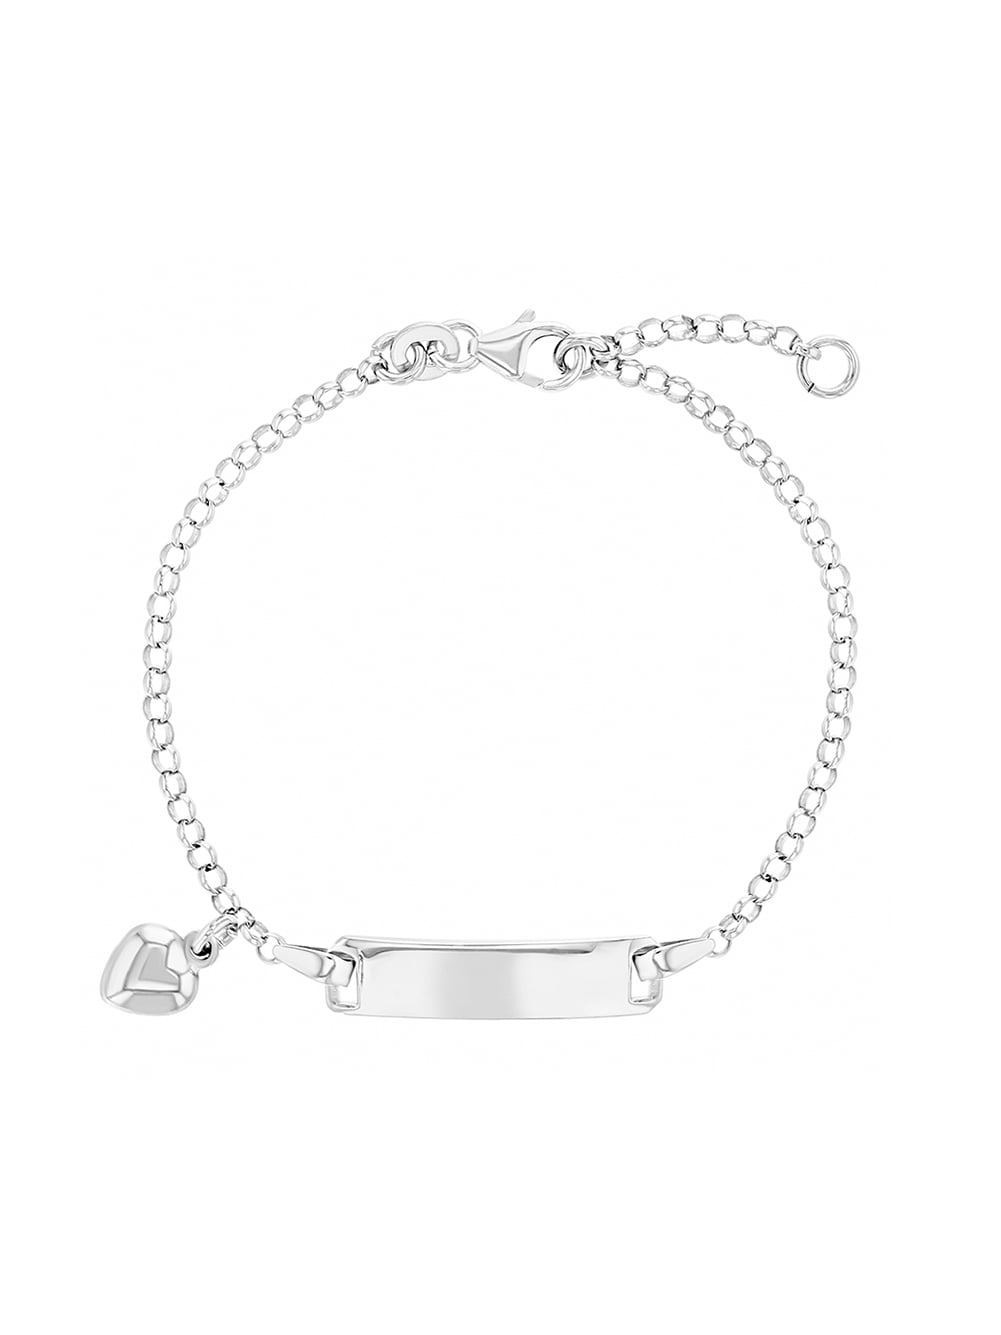 EVER FAITH 925 Sterling Silver Girls Gift Lovely Little Bear Jingle Bell Bead Link Hand Chain Bracelet 